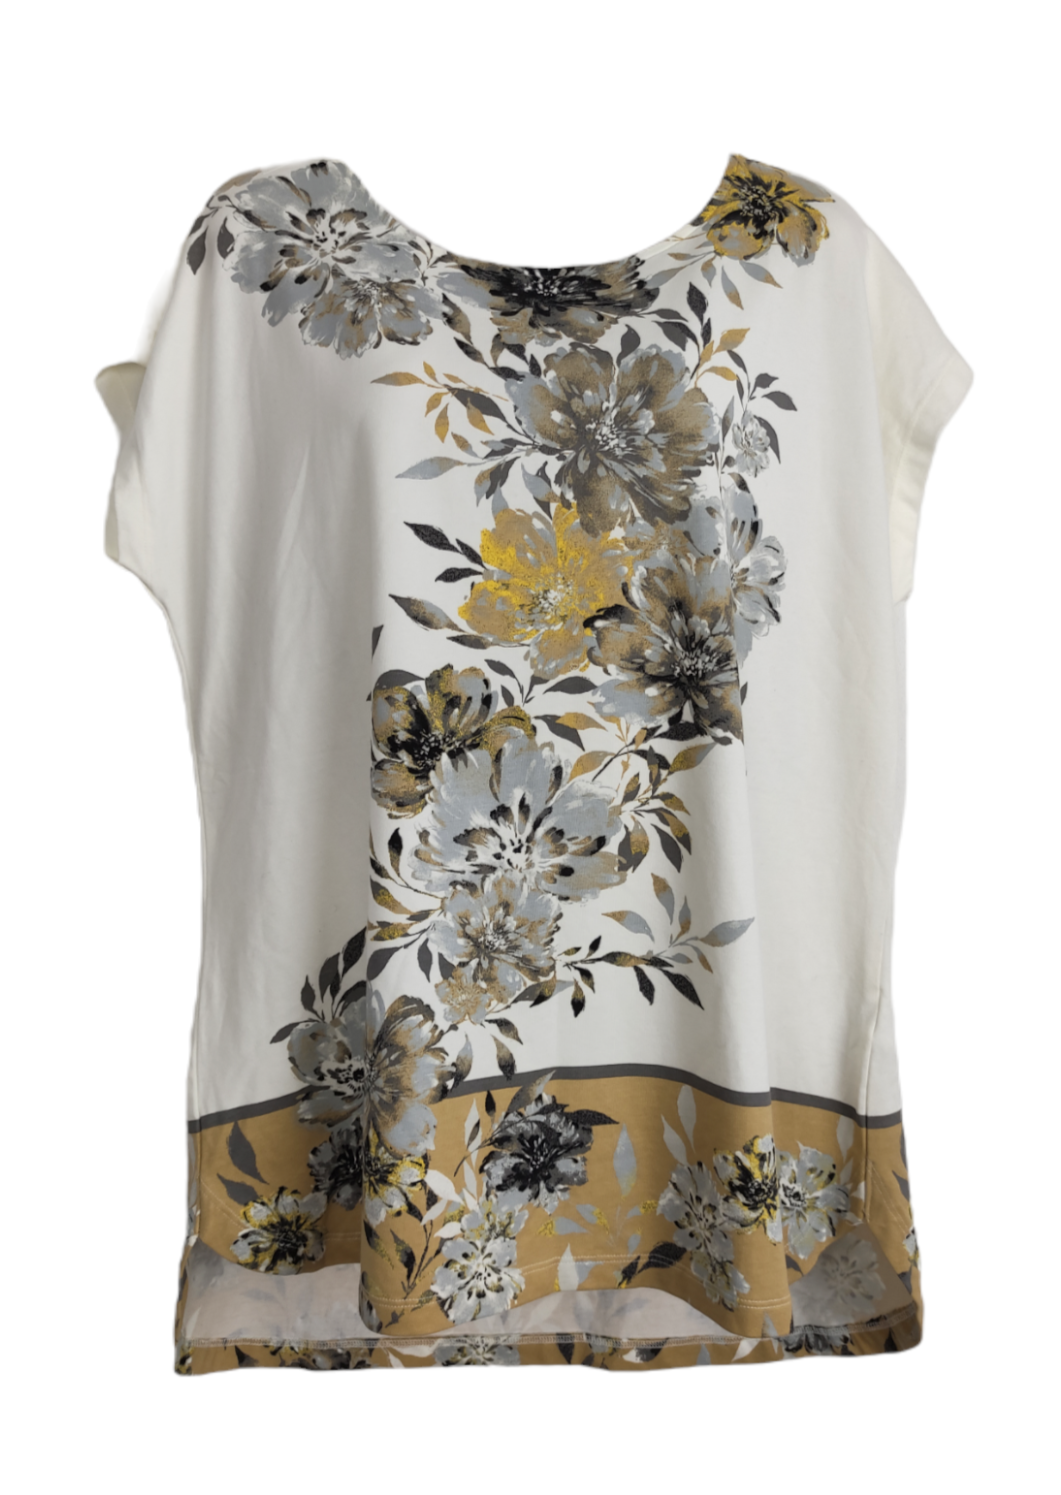 Γυναικεία Μπλούζα D&CO με Φλοράλ σχέδιο σε Λευκό-Κρεμ Χρώμα (L/XL)